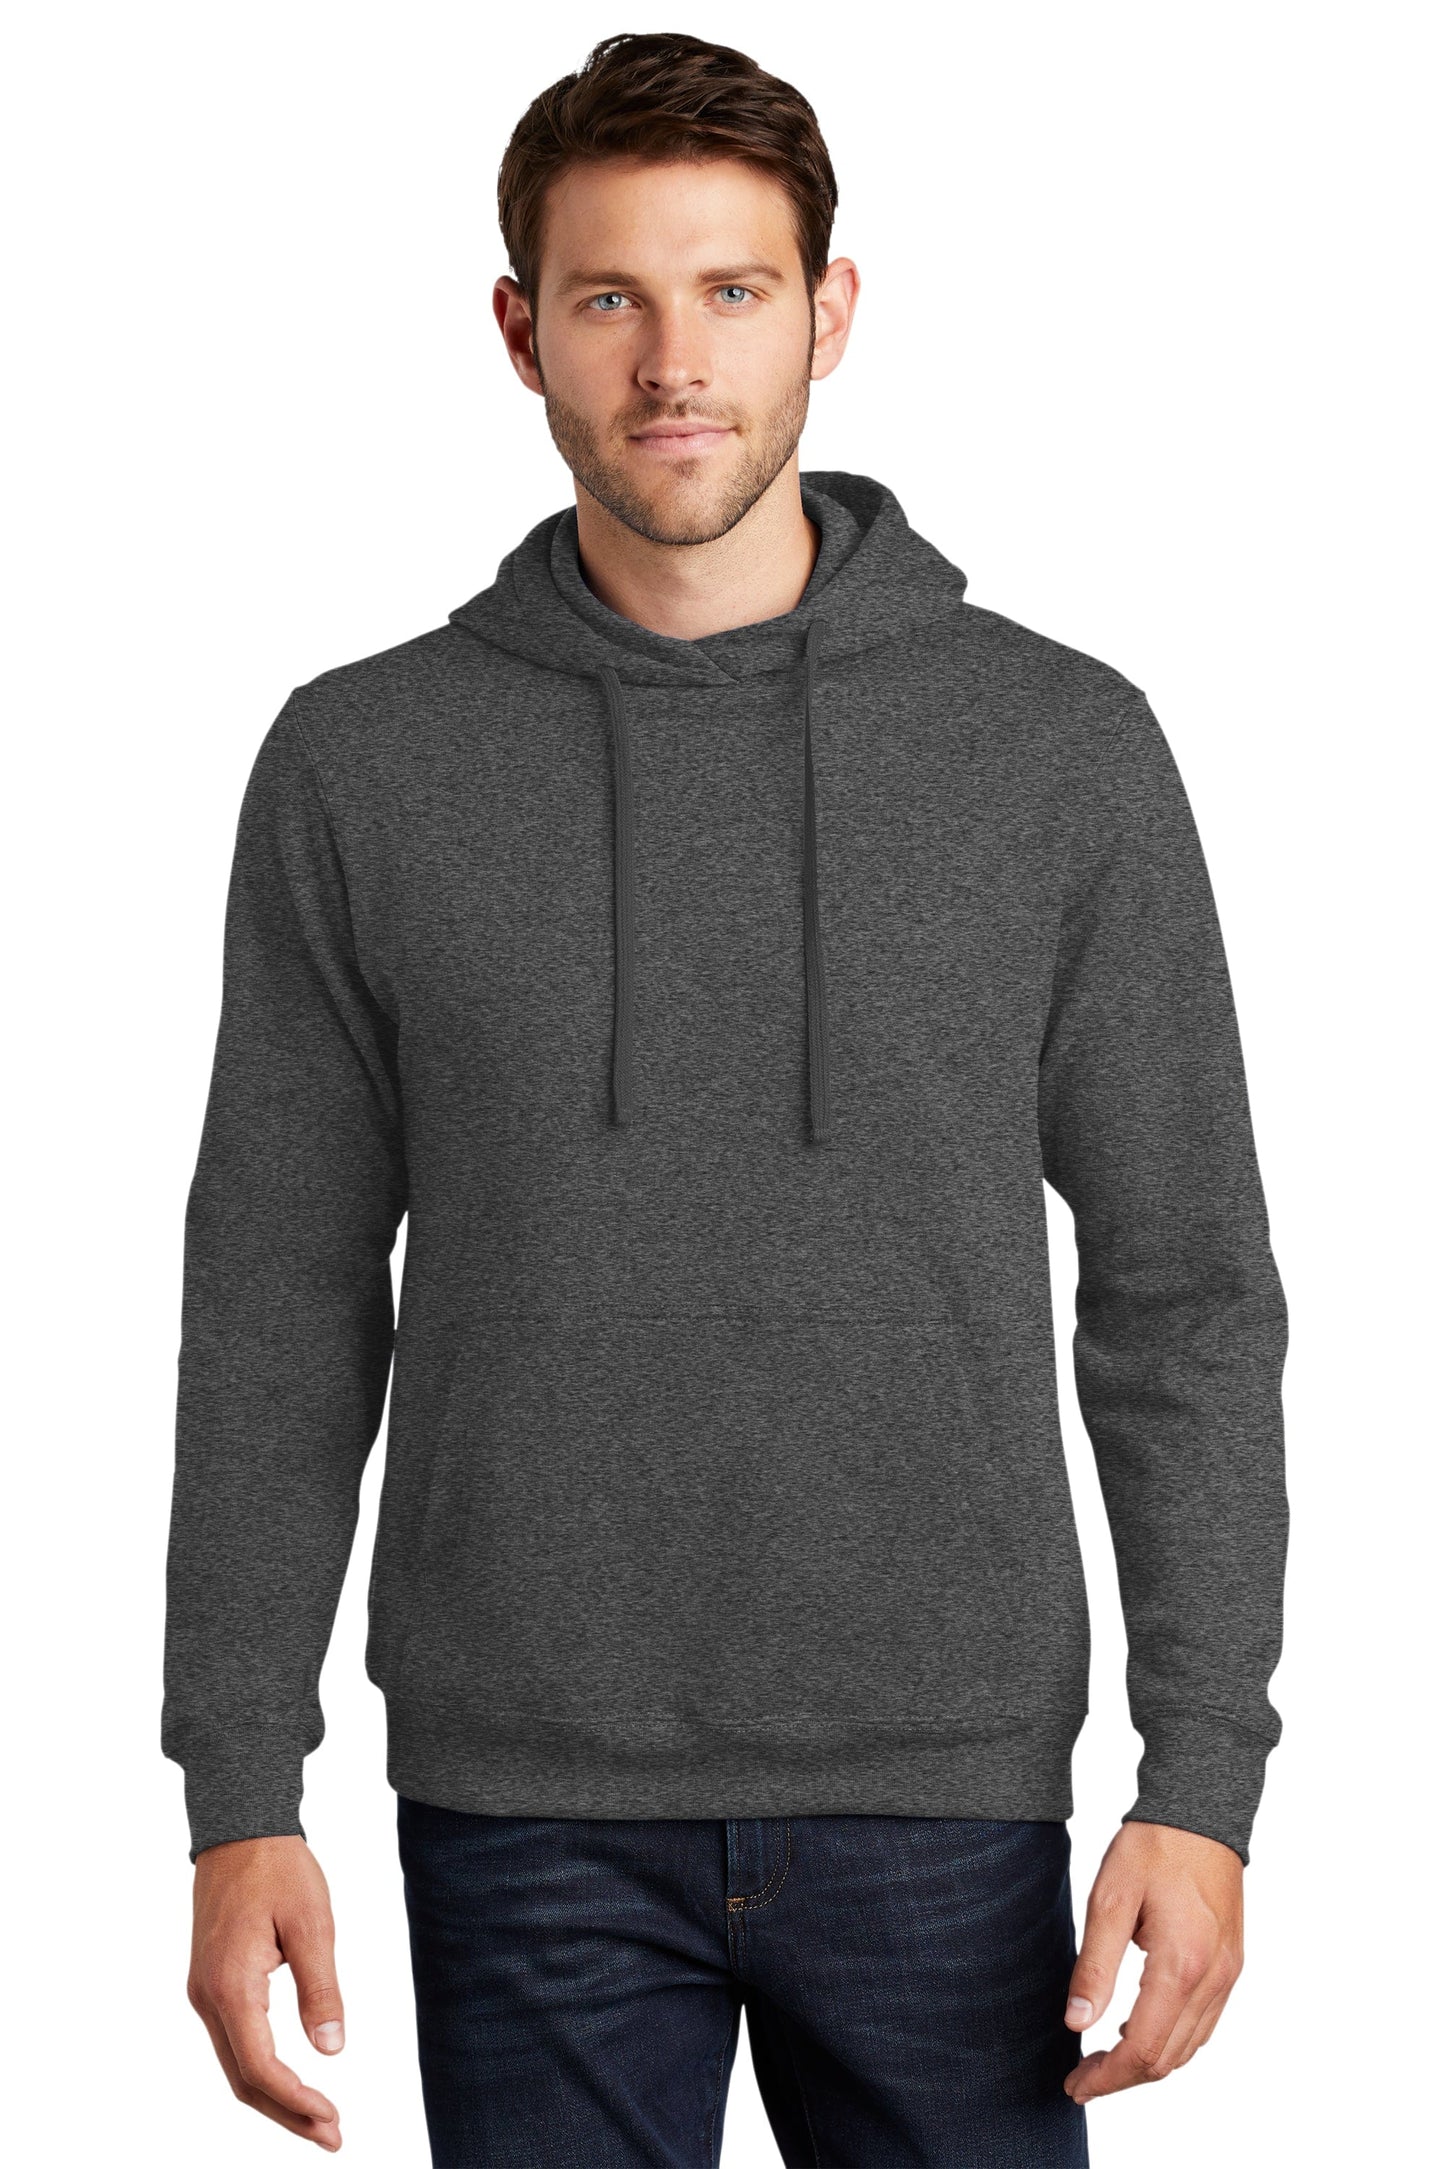 Short Men's Premium Fleece Pullover Hoodie Sweatshirt - Navy & Heather –